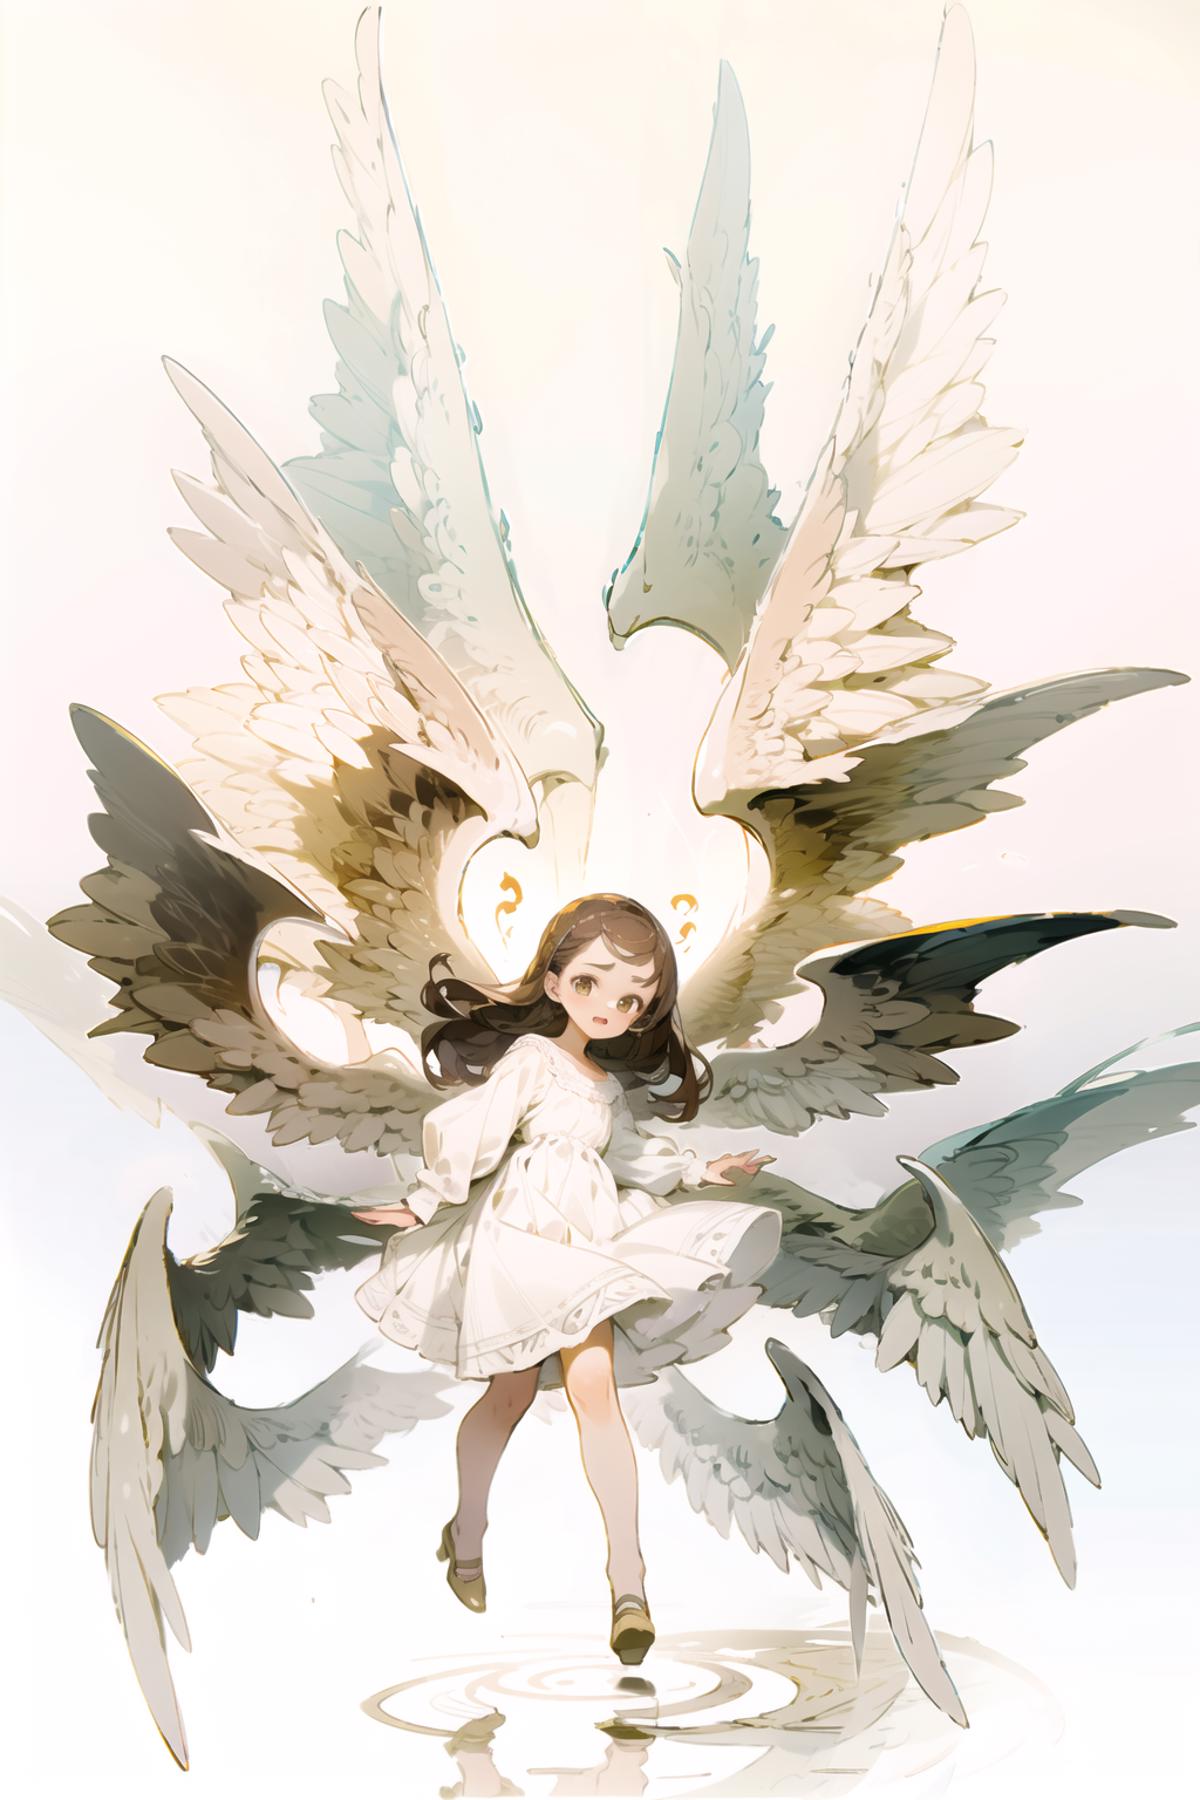 [LoHa] Seraphim/熾天使/セラフ Concept image by L_A_X